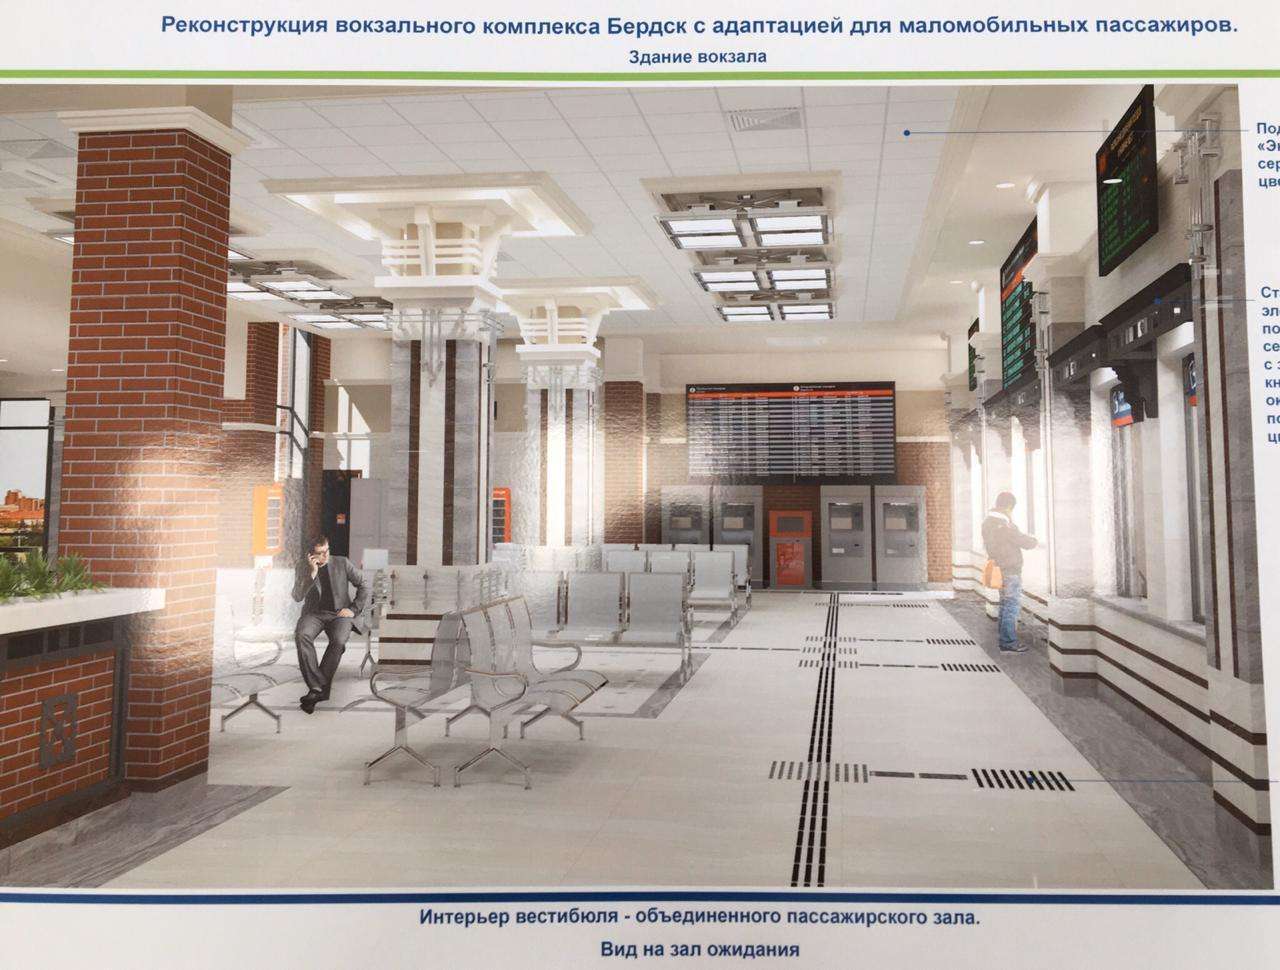 Посмотрите, каким будет новый вокзал в Бердске  - внутри и снаружи